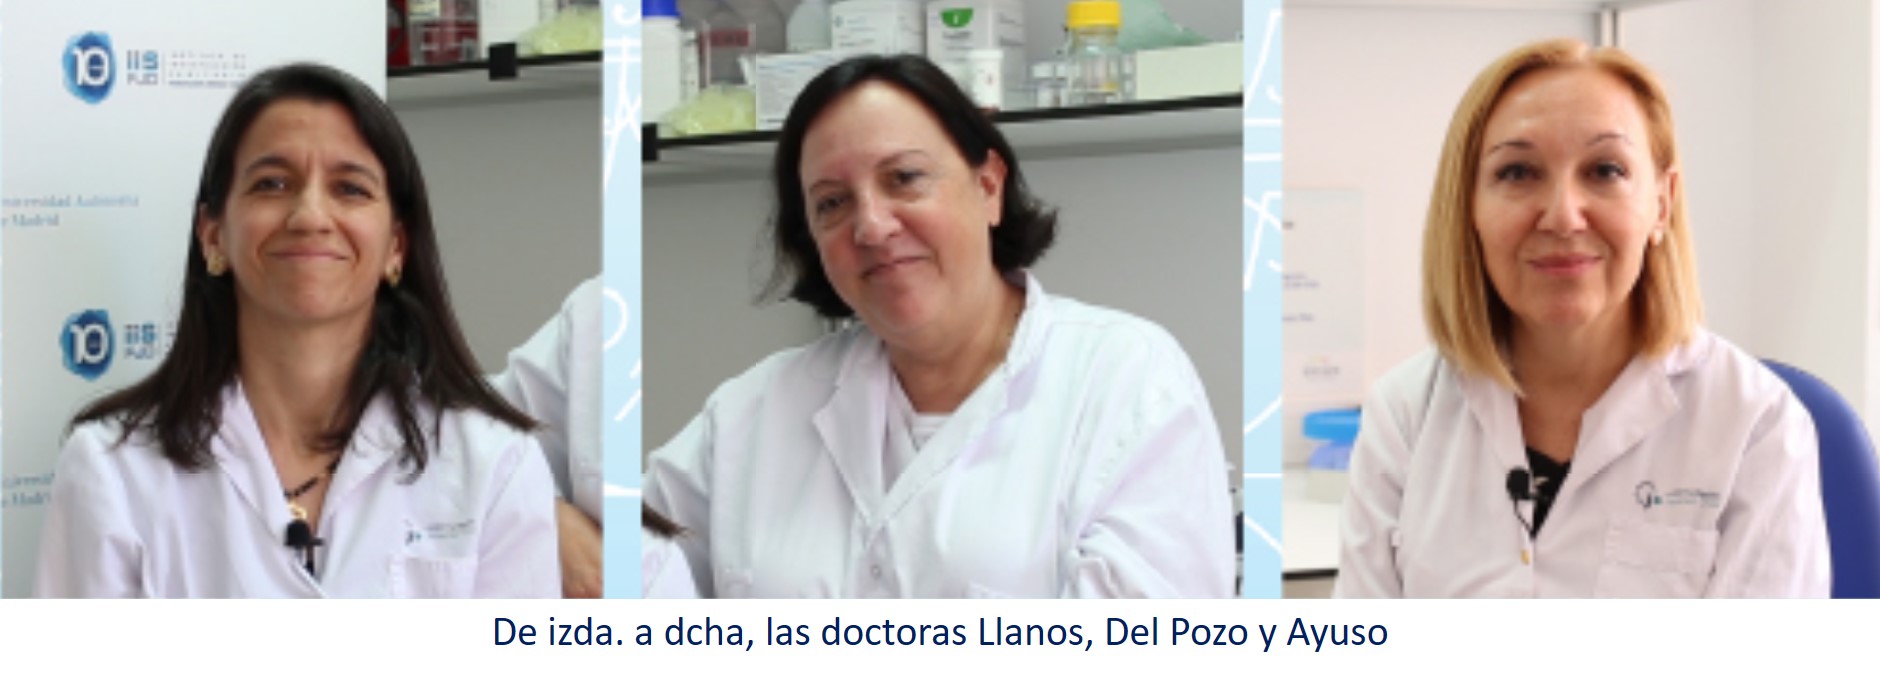 De izda. a dcha, las doctoras Llanos, Del Pozo y Ayuso